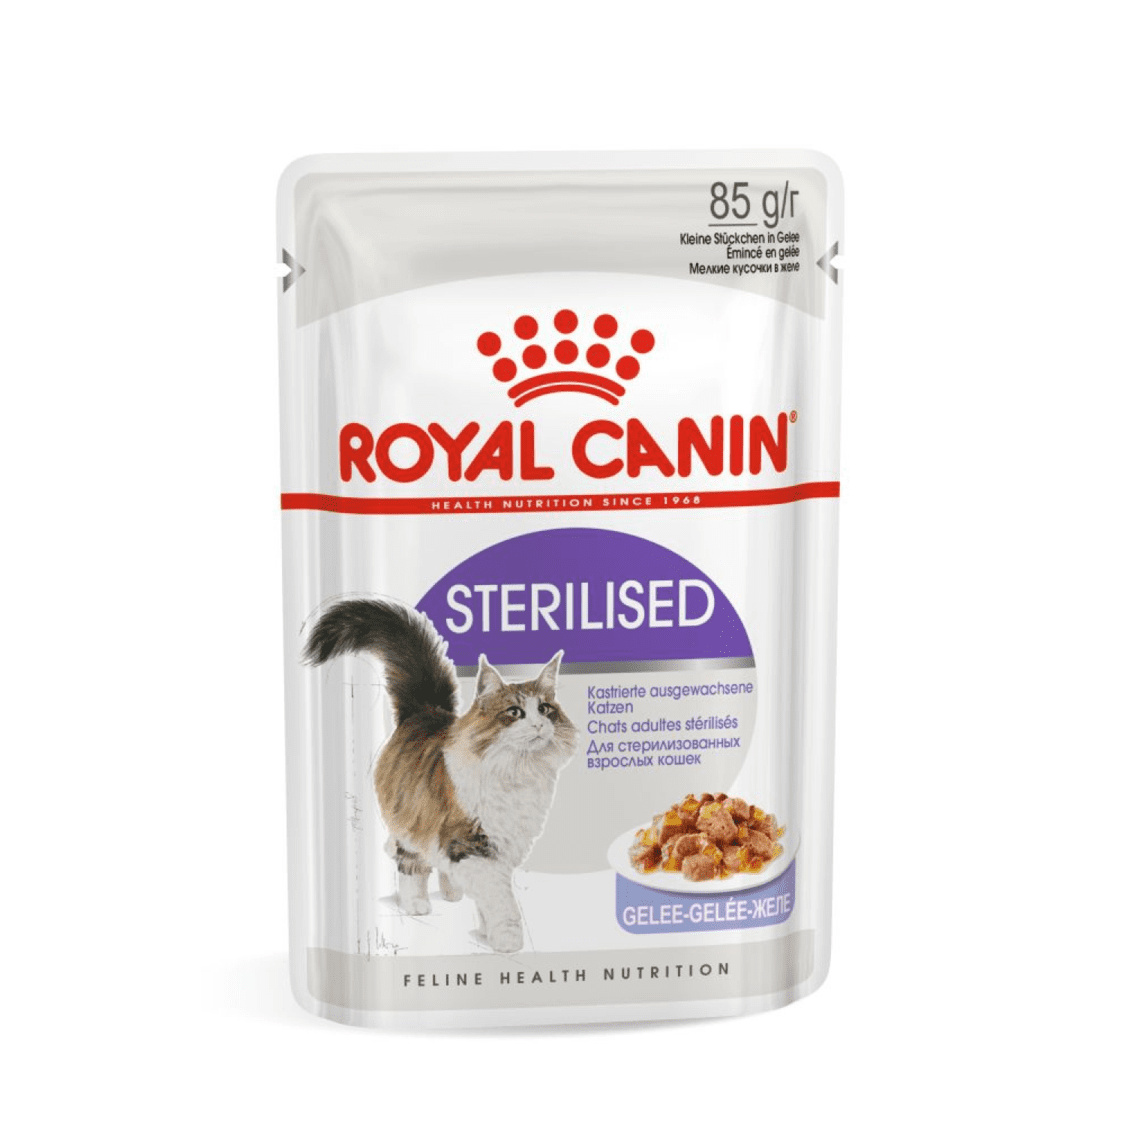 Royal Canin паучи Royal Canin паучи кусочки в желе для кастрированных кошек 1-7лет (1 шт.) royal canin паучи royal canin паучи кусочки в соусе для кастрированных кошек 1 7лет 1 шт